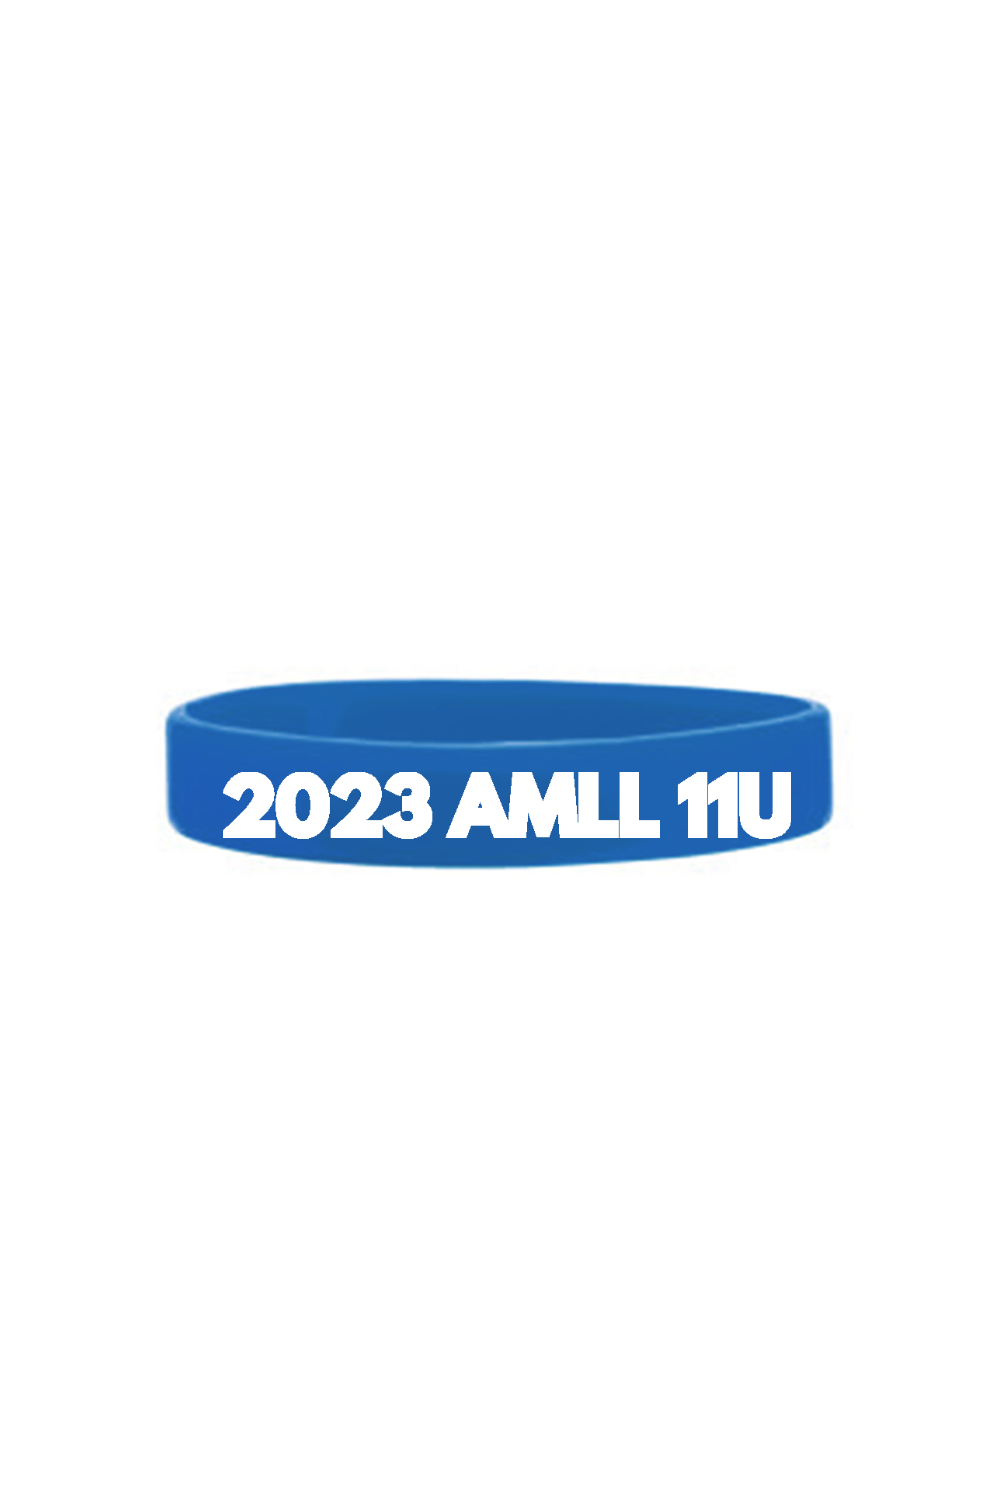 AMLL 11U Laser Engraved 3 3/4" Silicone Bracelet